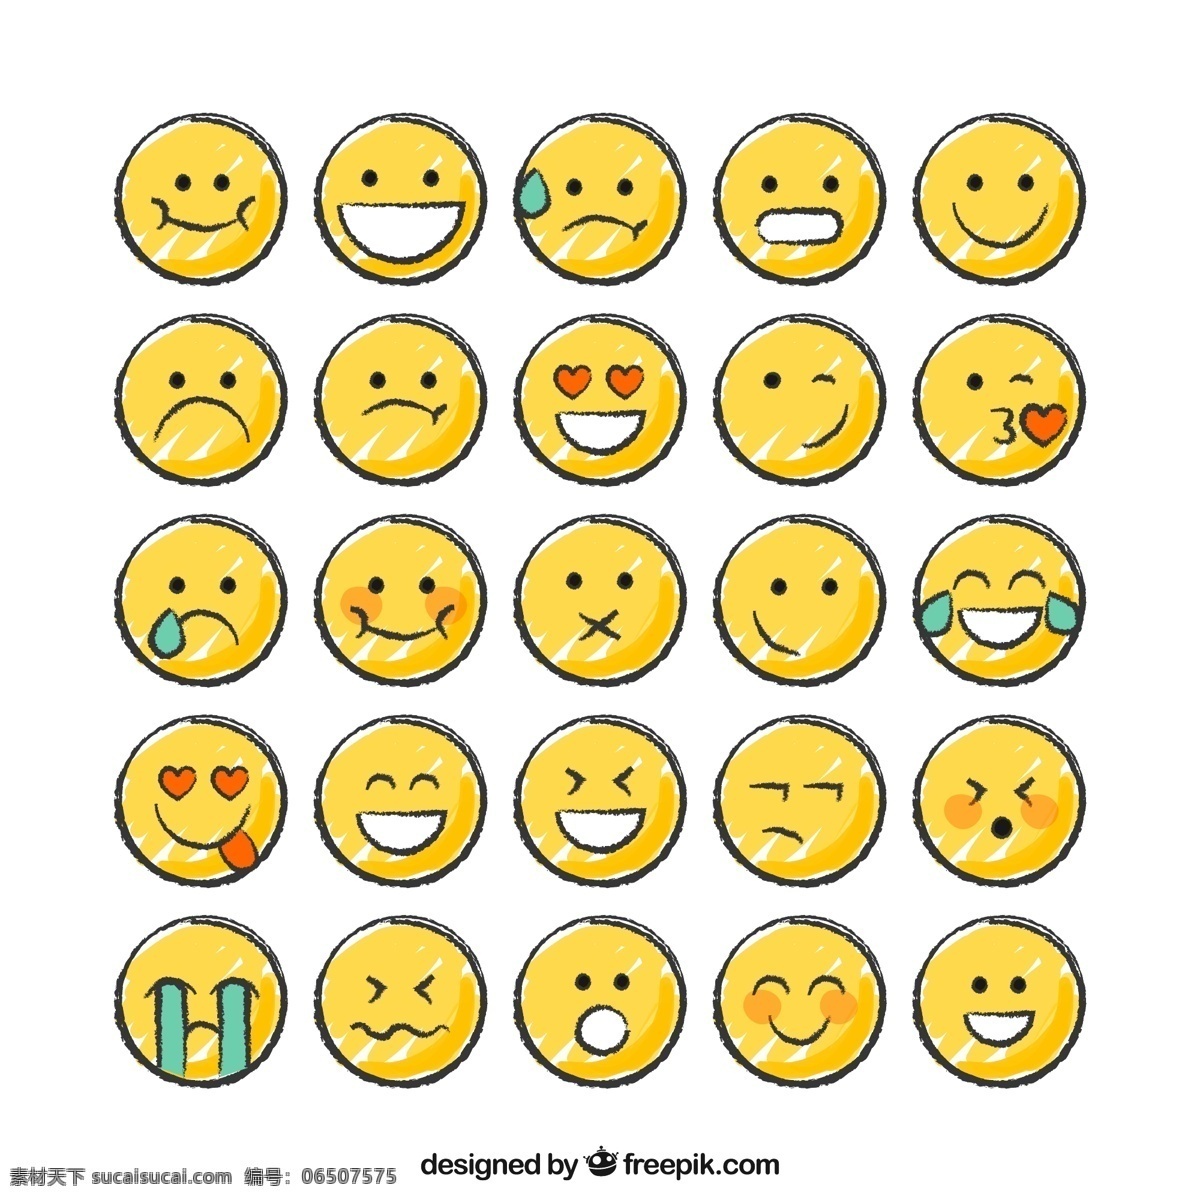 表情 圆形表情图标 橙色圆形表情 表情图标 qq表情 手机表情 笑脸表情 难过表情 生气表情 可爱表情